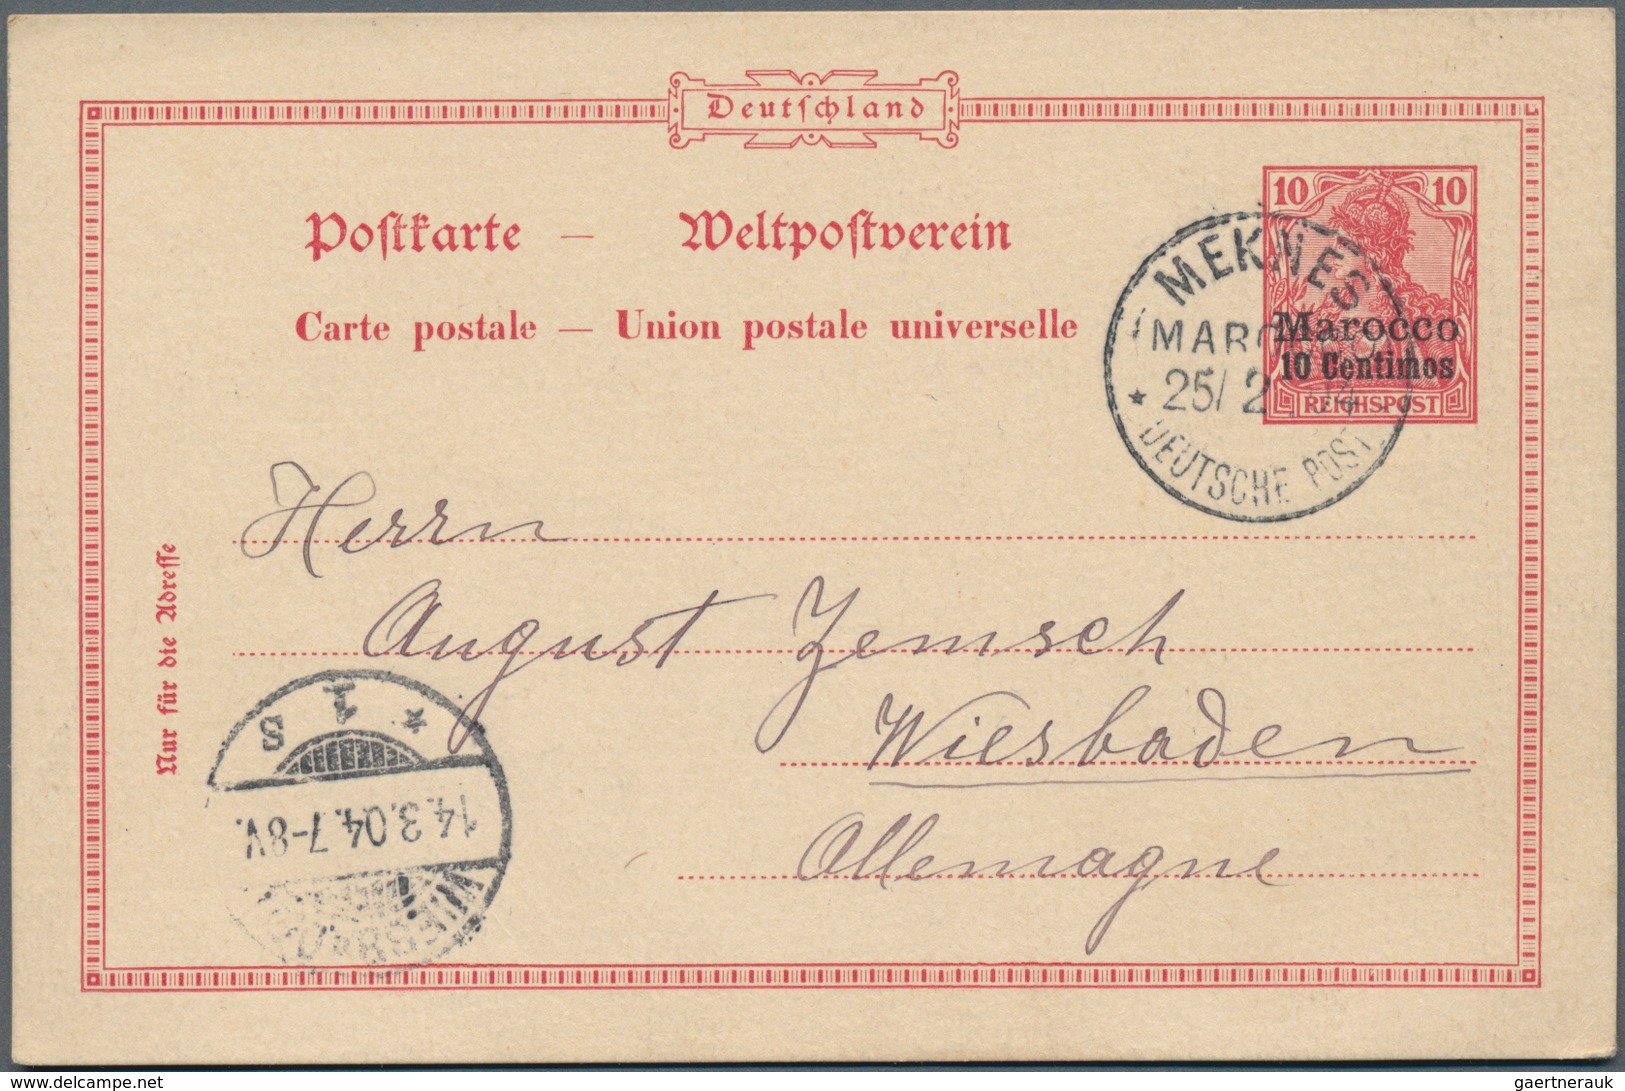 Deutsche Post In Der Türkei: 1880/1905 (ca.), 39 Belege, Zusätzlich 13 Belege Deutsche Post In Marok - Deutsche Post In Der Türkei